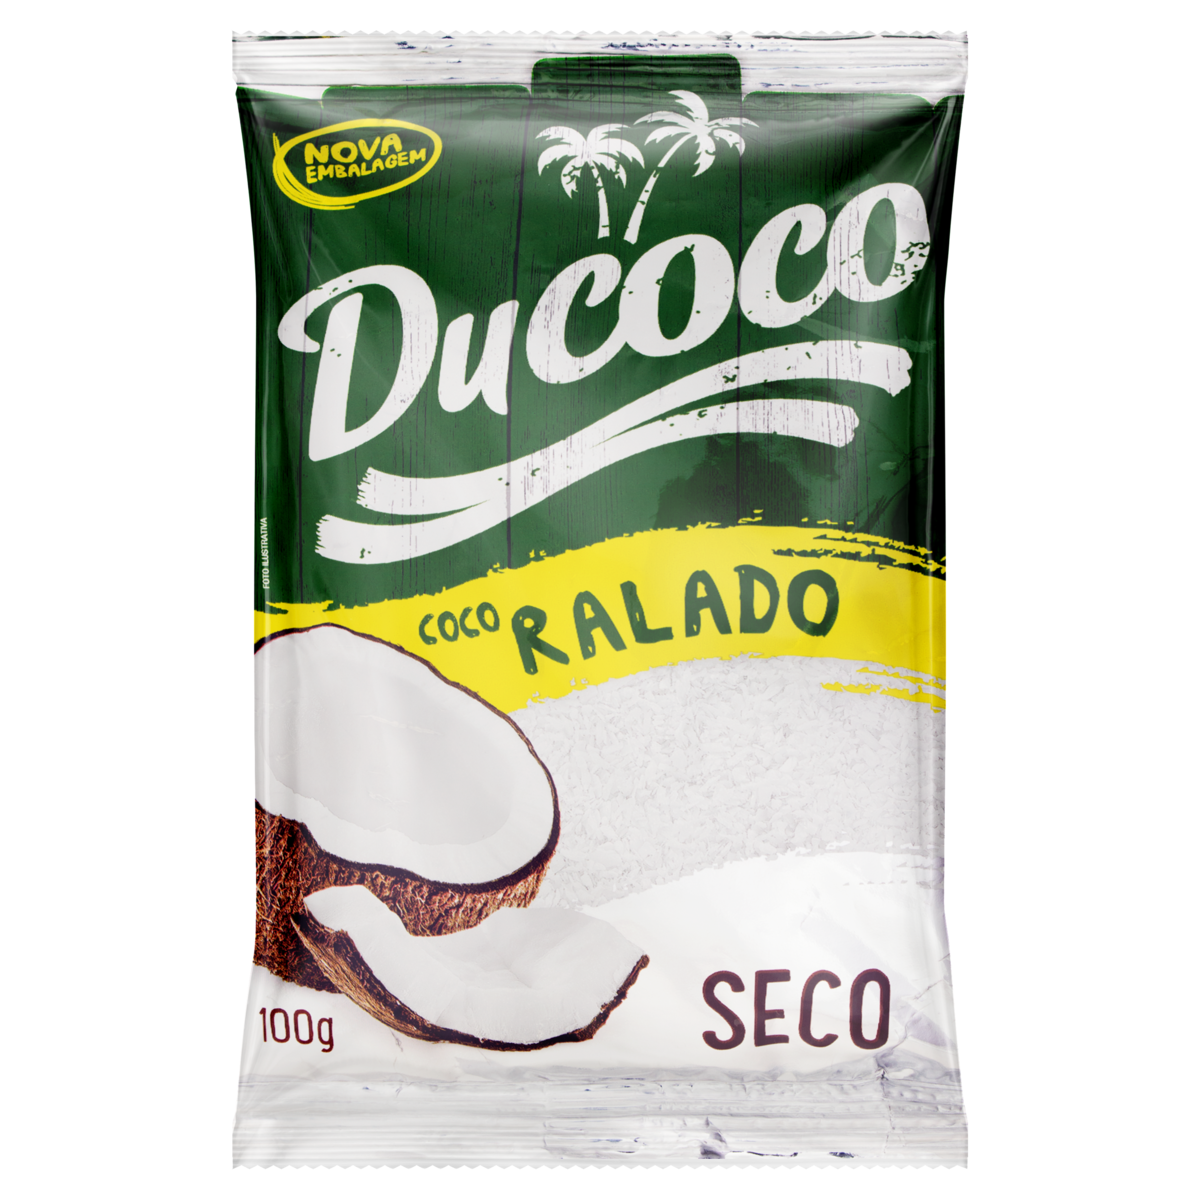 7896016600104 - COCO RALADO SECO DUCOCO PACOTE 100G